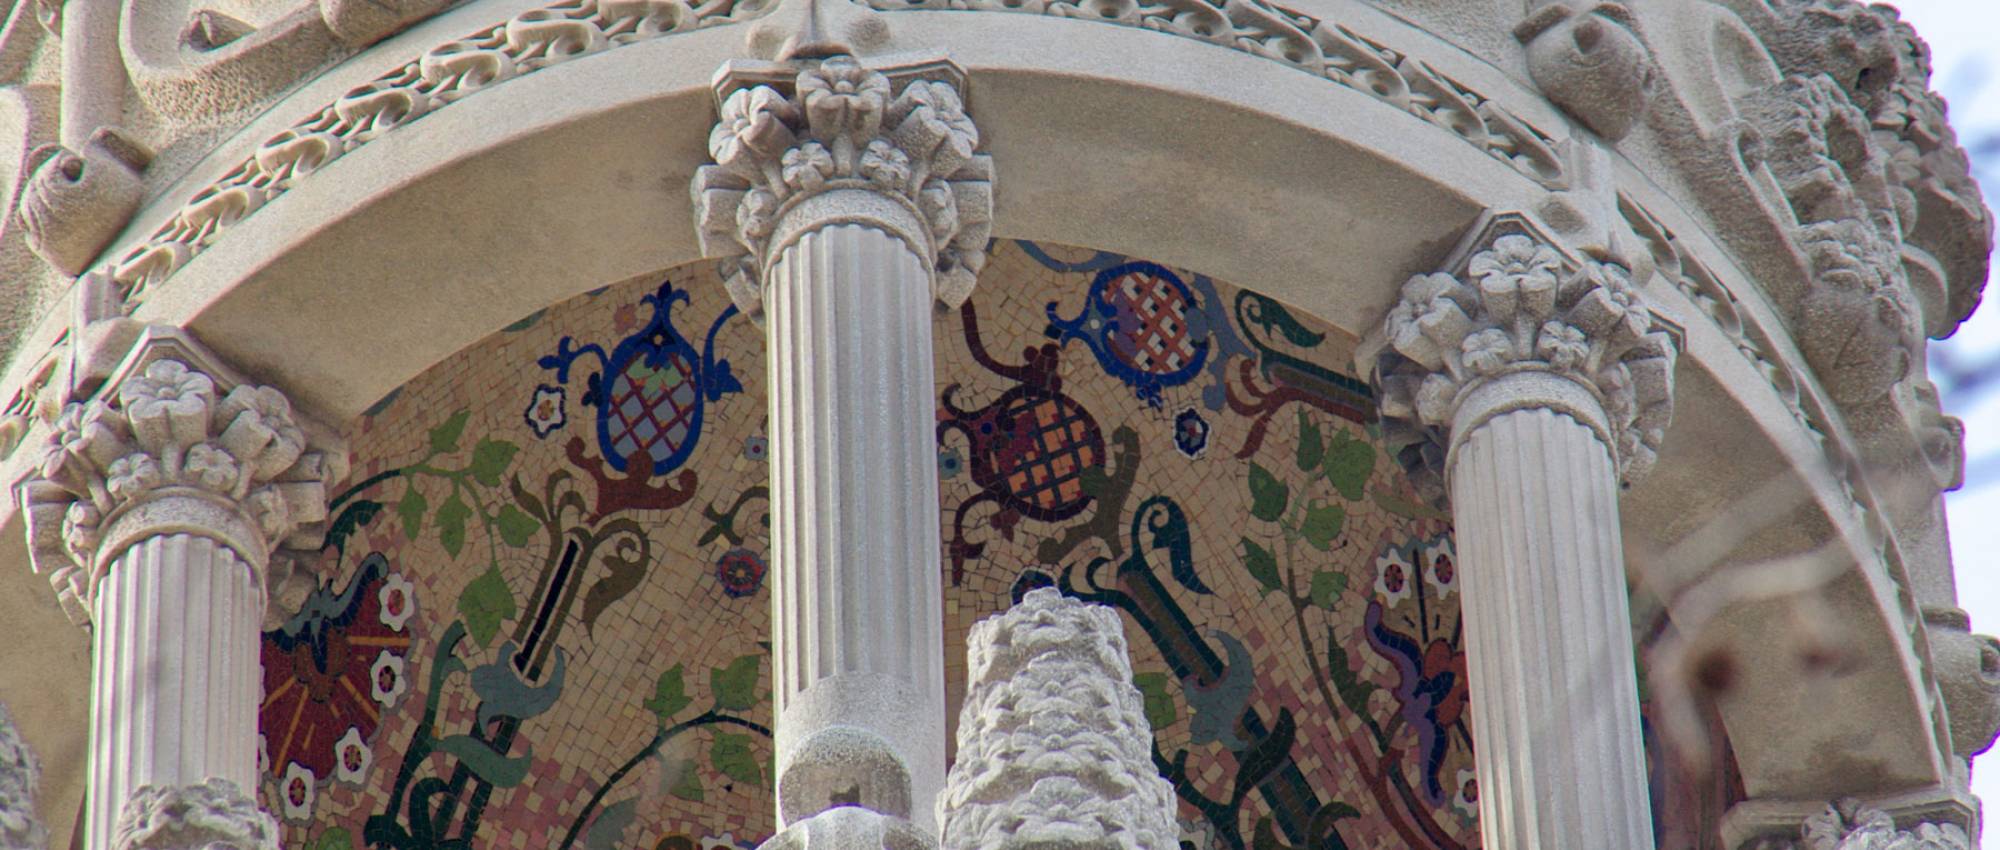 Mosaico del techo de la torre de la terraza. Amadalvarez / Wikimedia Commons. CC BY-SA 3.0